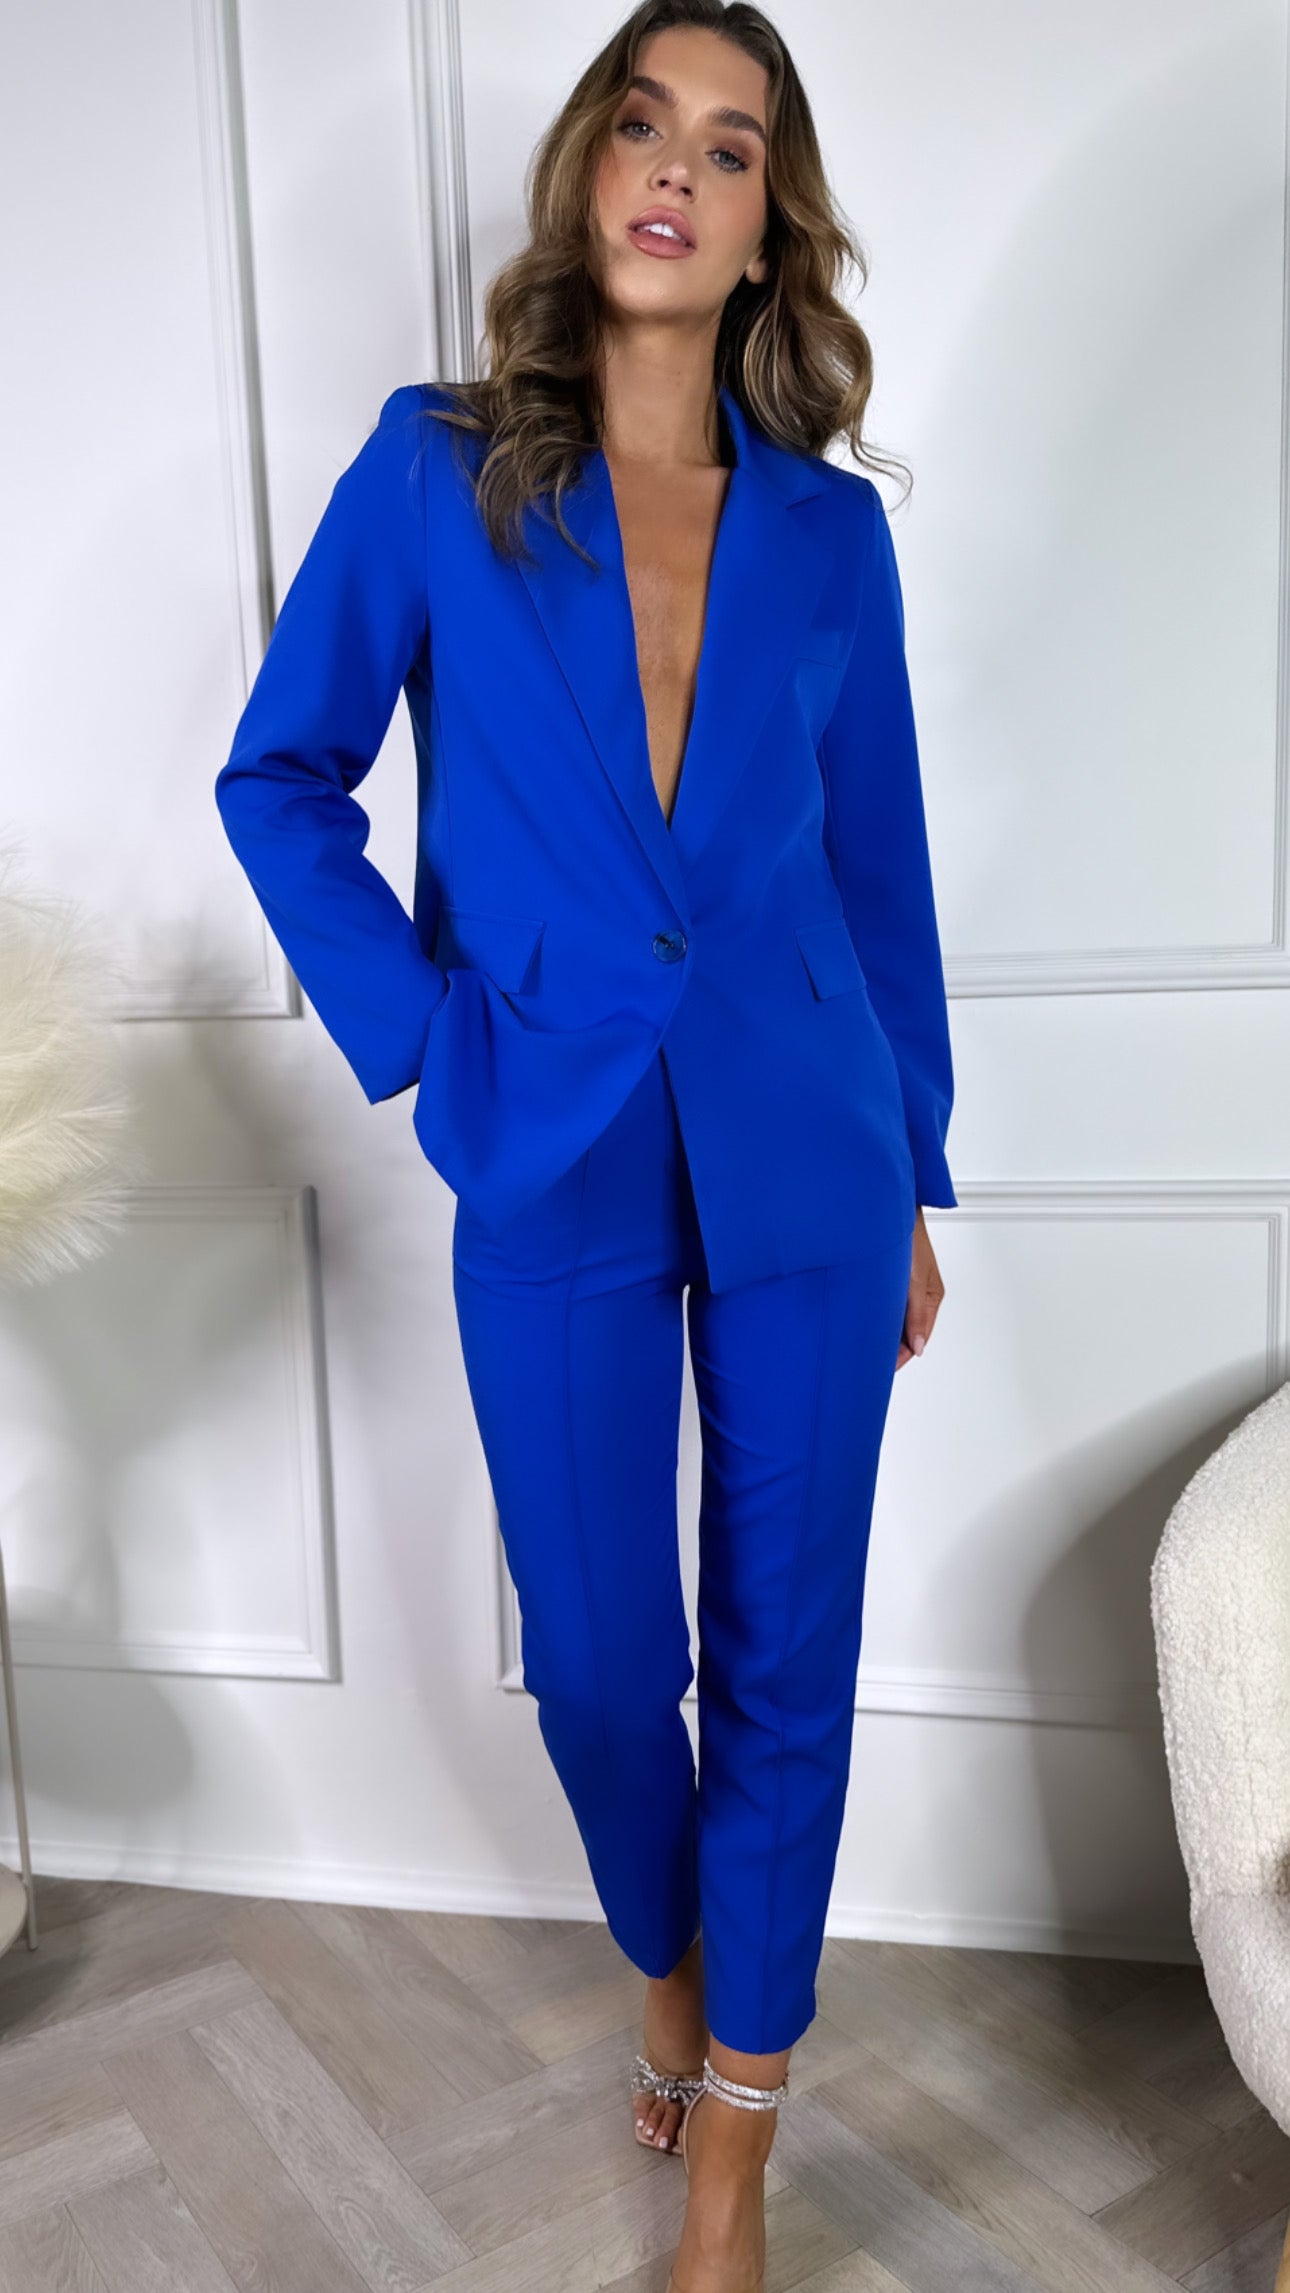 Hudson Blue Blazer & Trousers Suit – Get That Trend